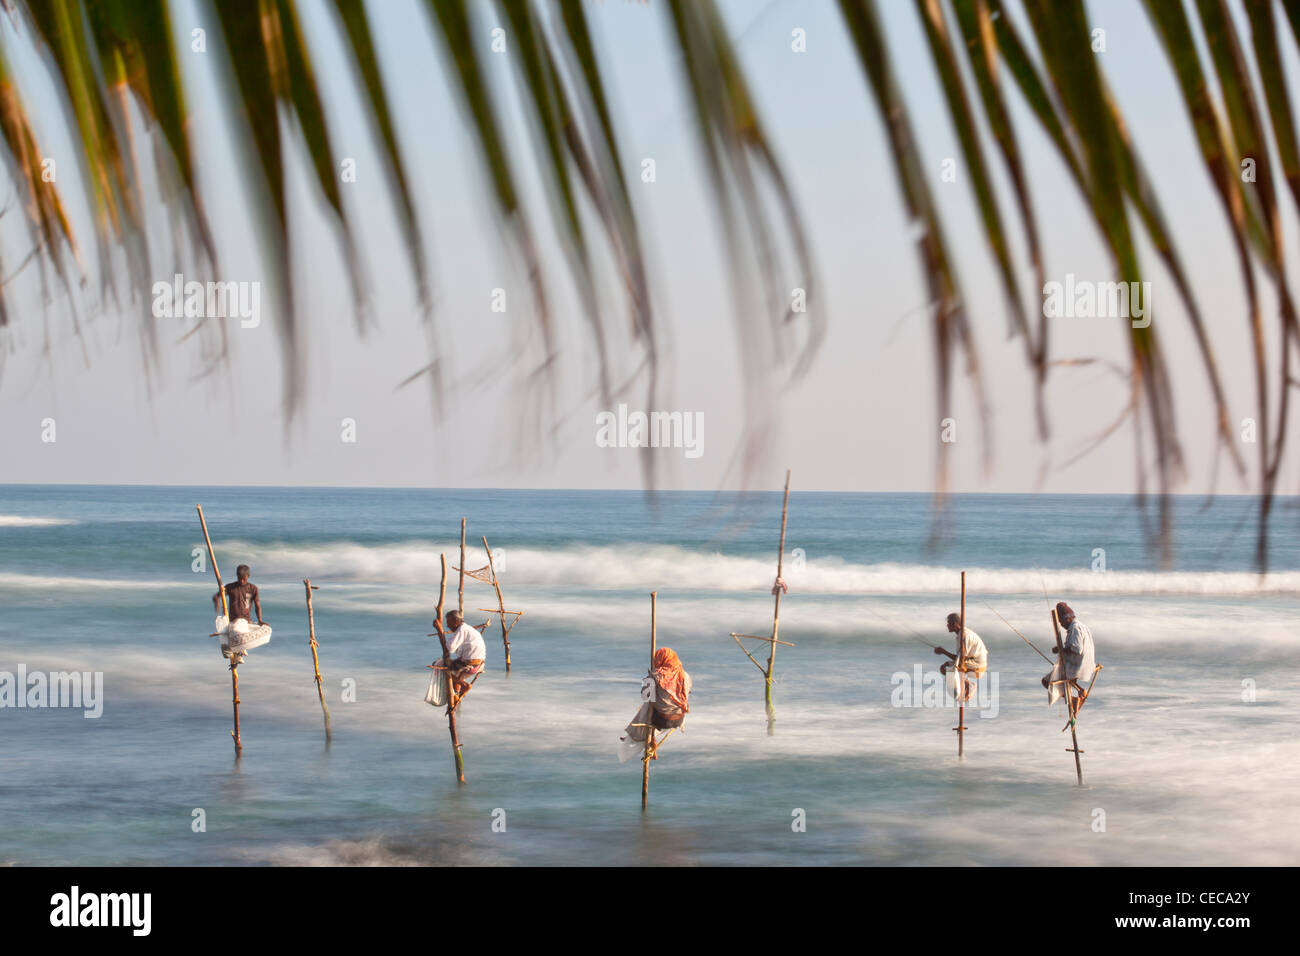 Pêcheurs sur pilotis Océan Indien Asie Sri Lanka Banque D'Images